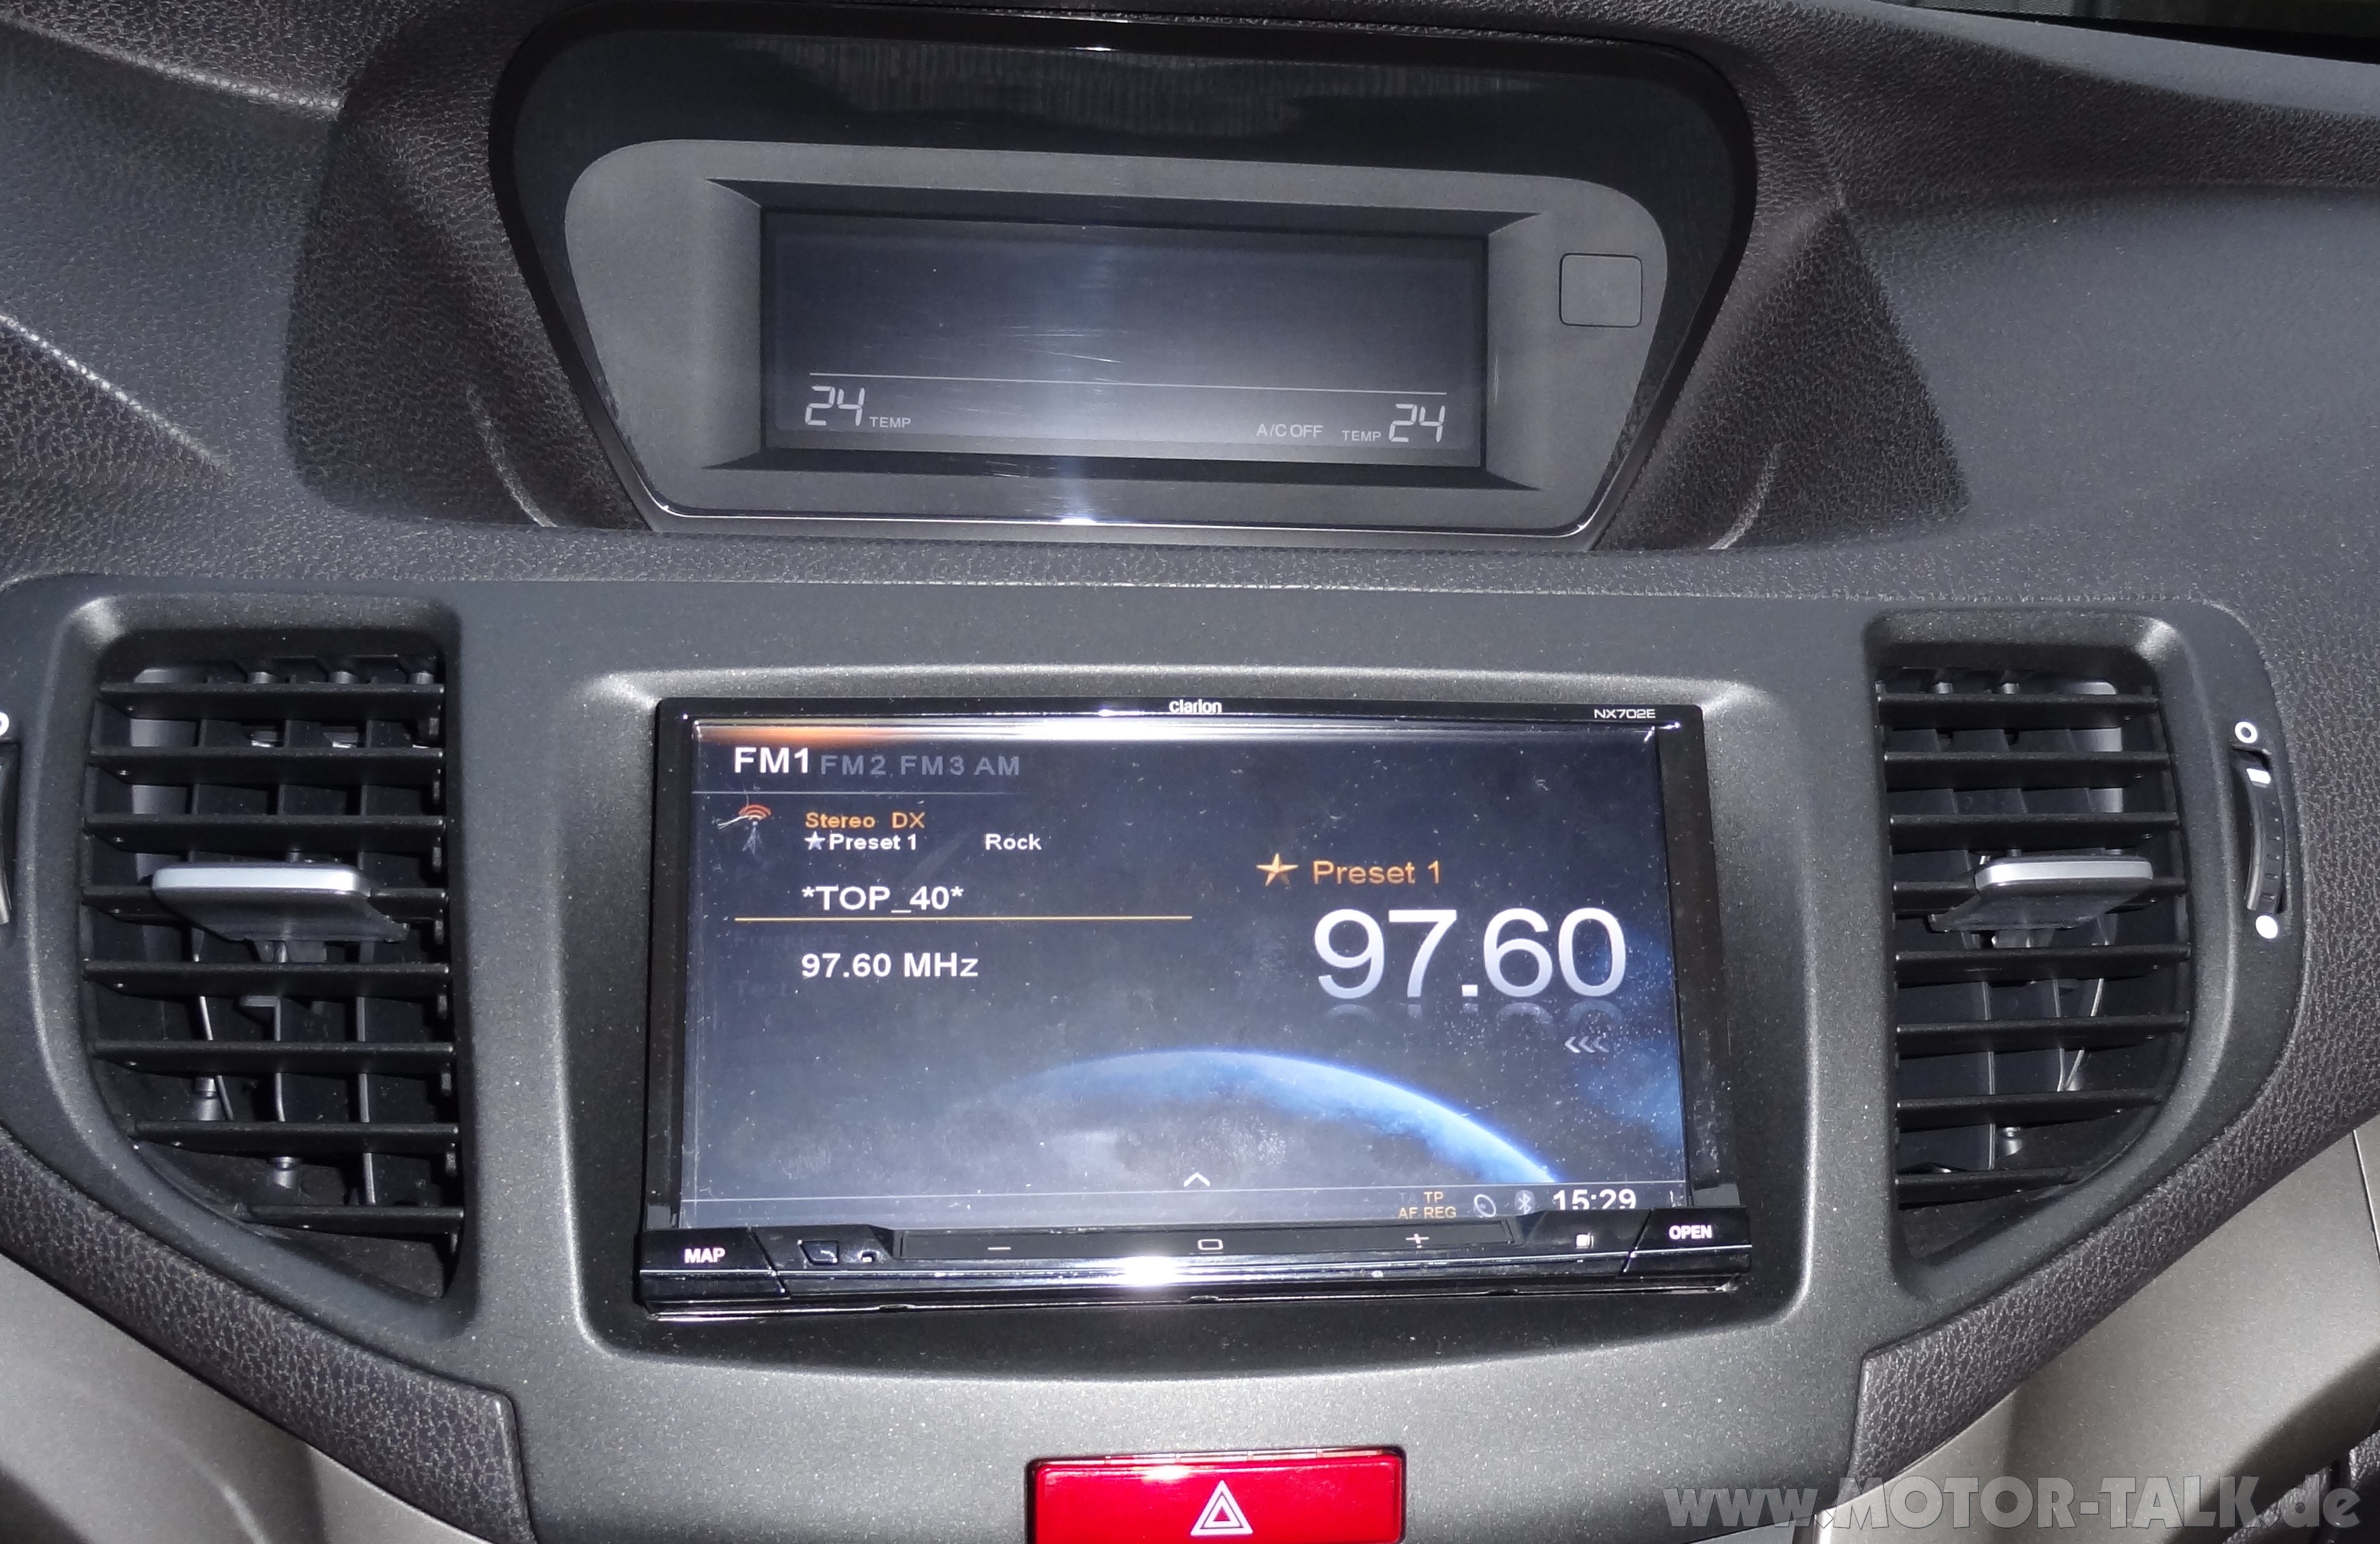 2005 Honda accord premium audio system #4